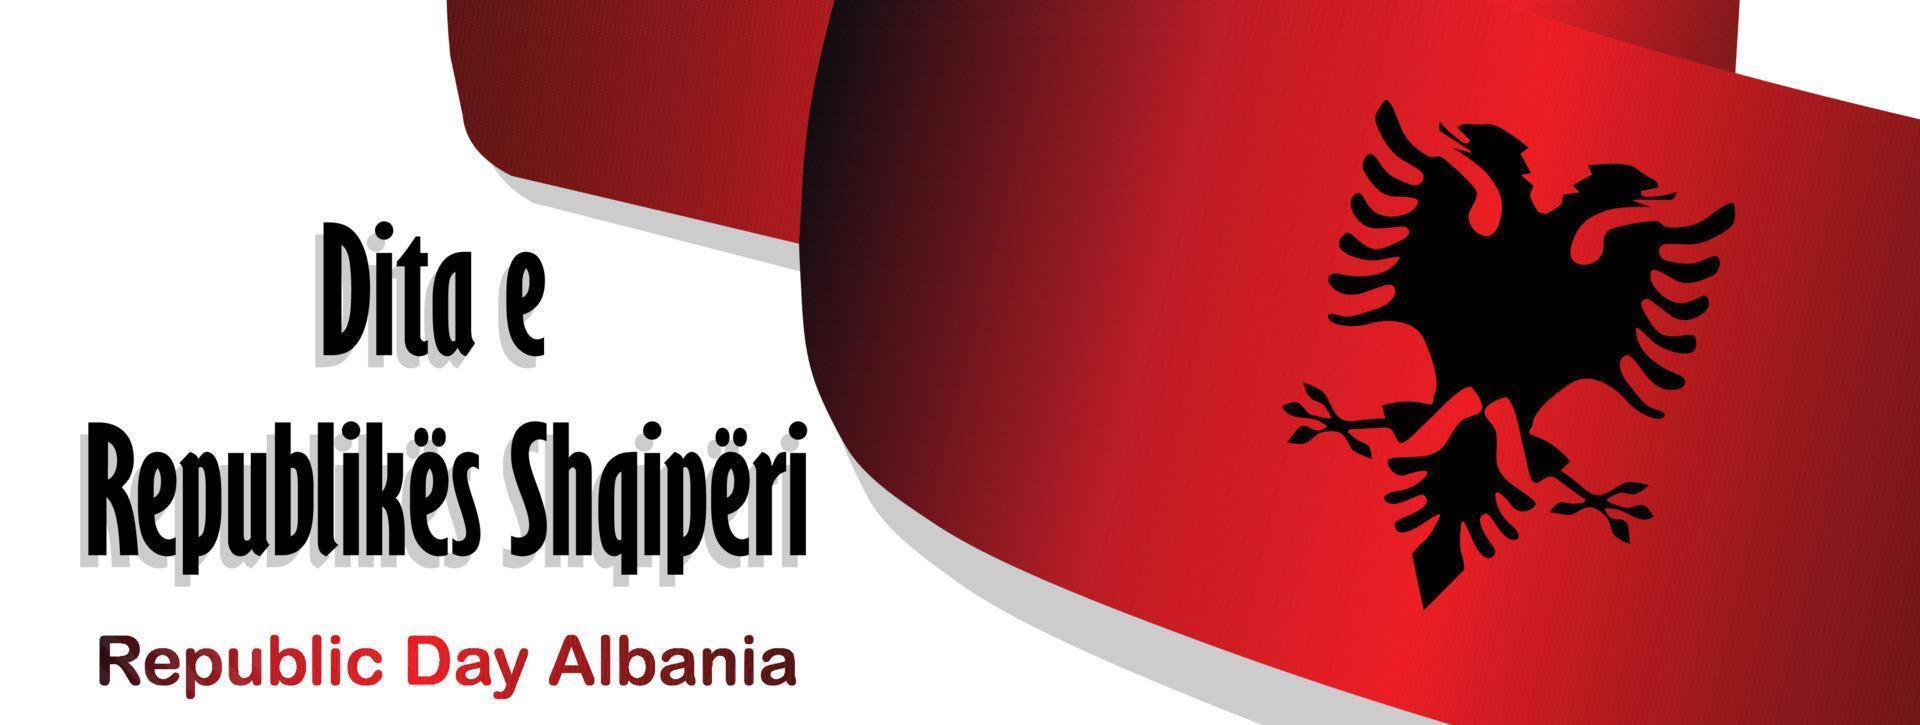 Tag der Republik Albanien. Flagge auf weißem Hintergrund. Unabhängigkeit Albaniens. Plakat, Werbebanner. übersetzungsbeschriftung am albanischen republiktag von albanien vektor